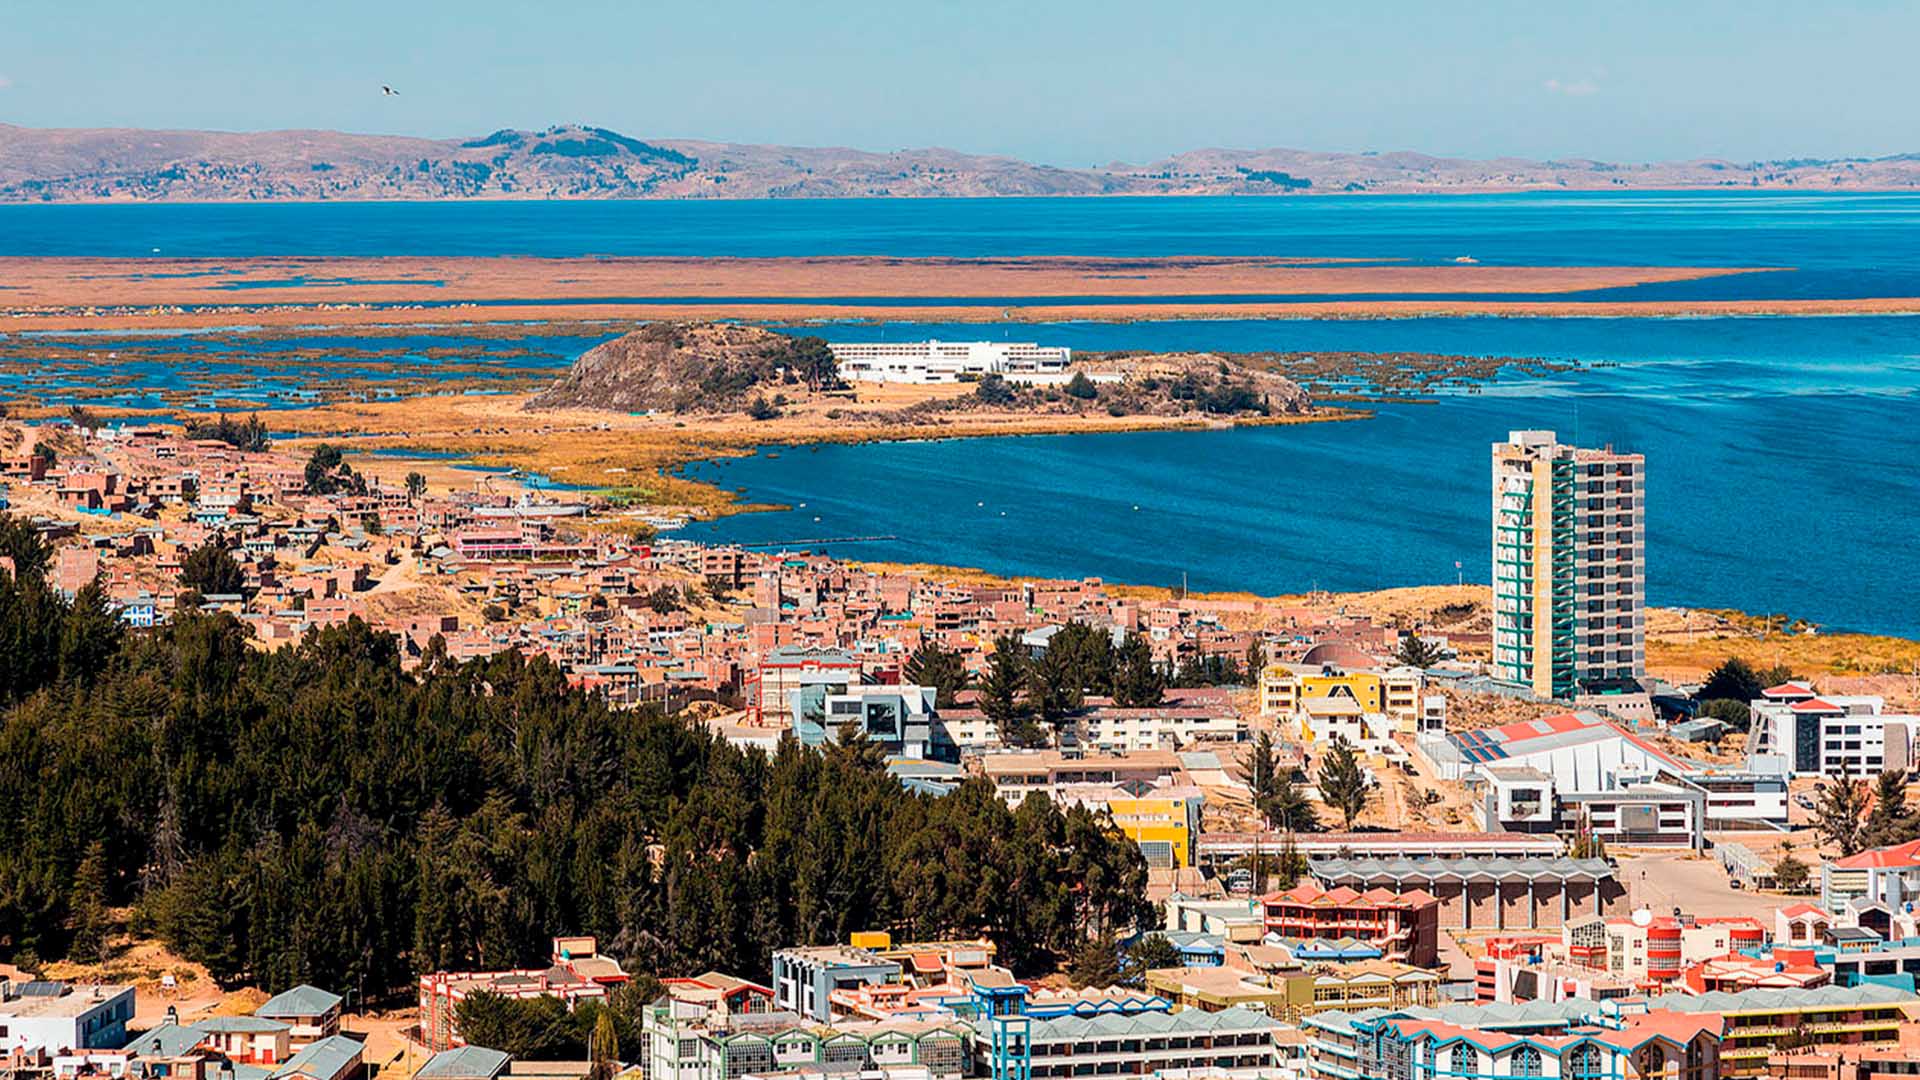 Ciudad de Puno